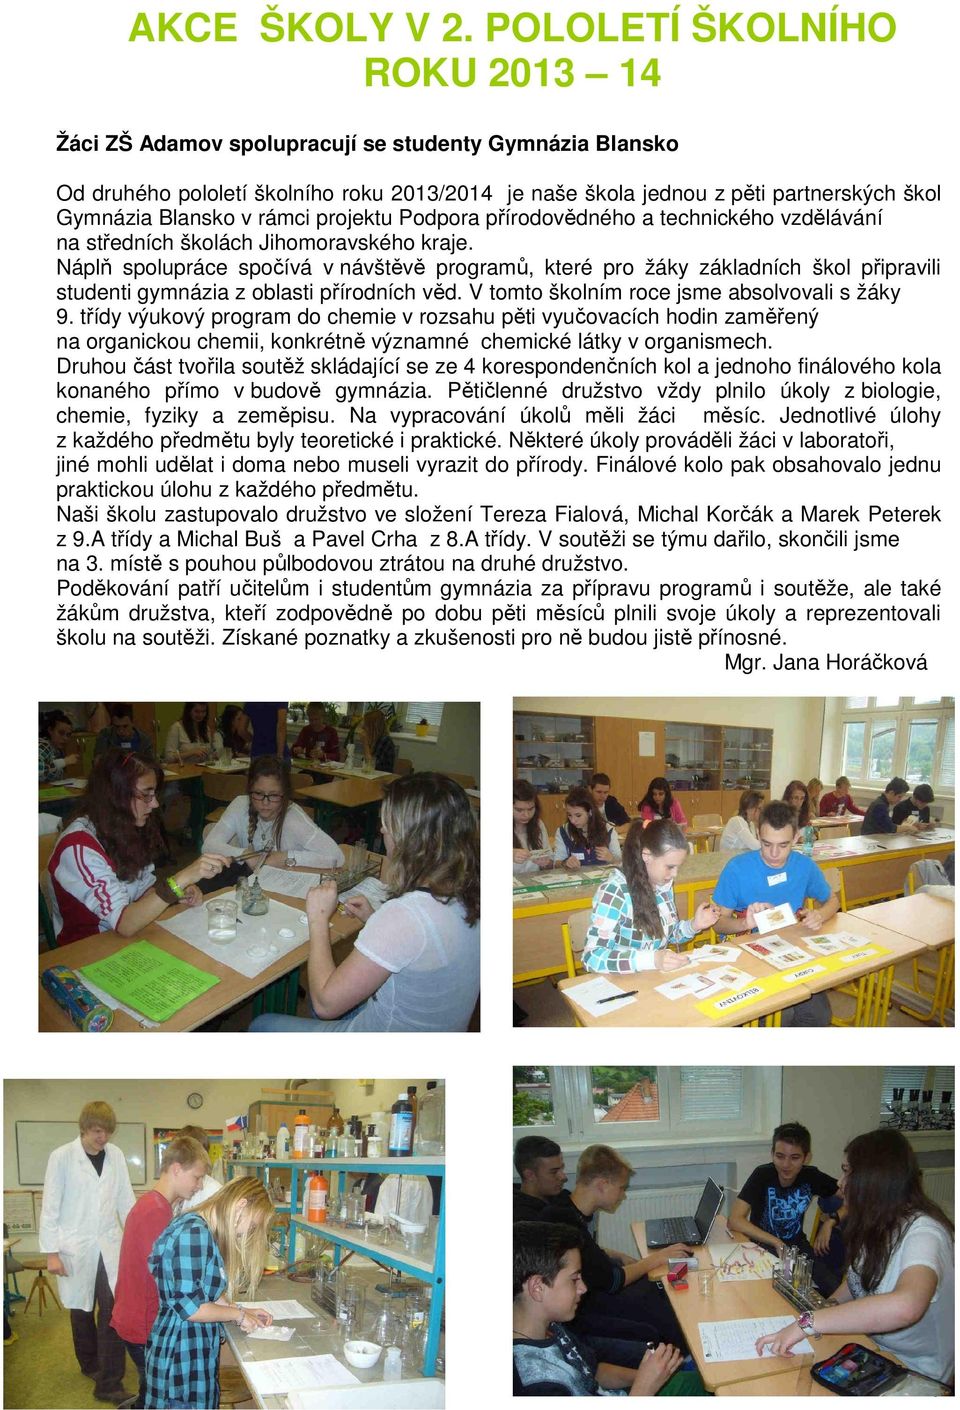 rámci projektu Podpora přírodovědného a technického vzdělávání na středních školách Jihomoravského kraje.